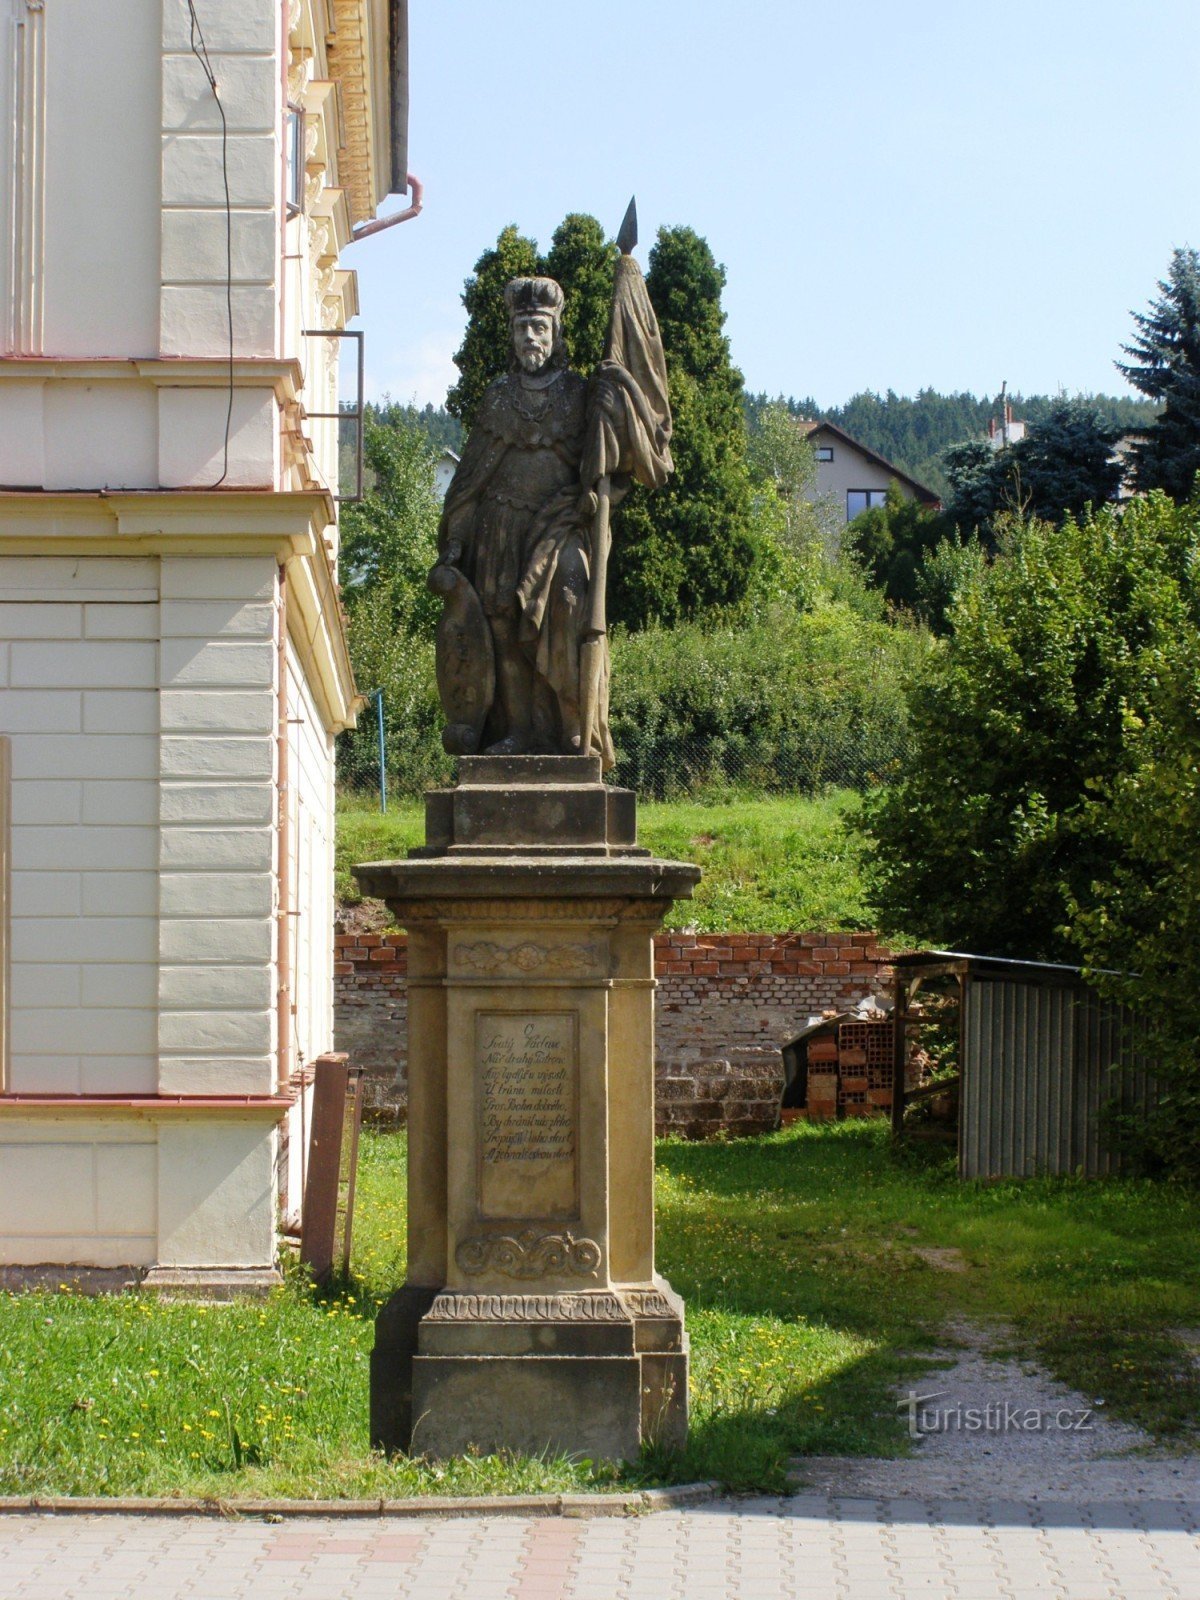 Stará Paka - statui ale Sf. Ludmila și Sf. Wenceslas